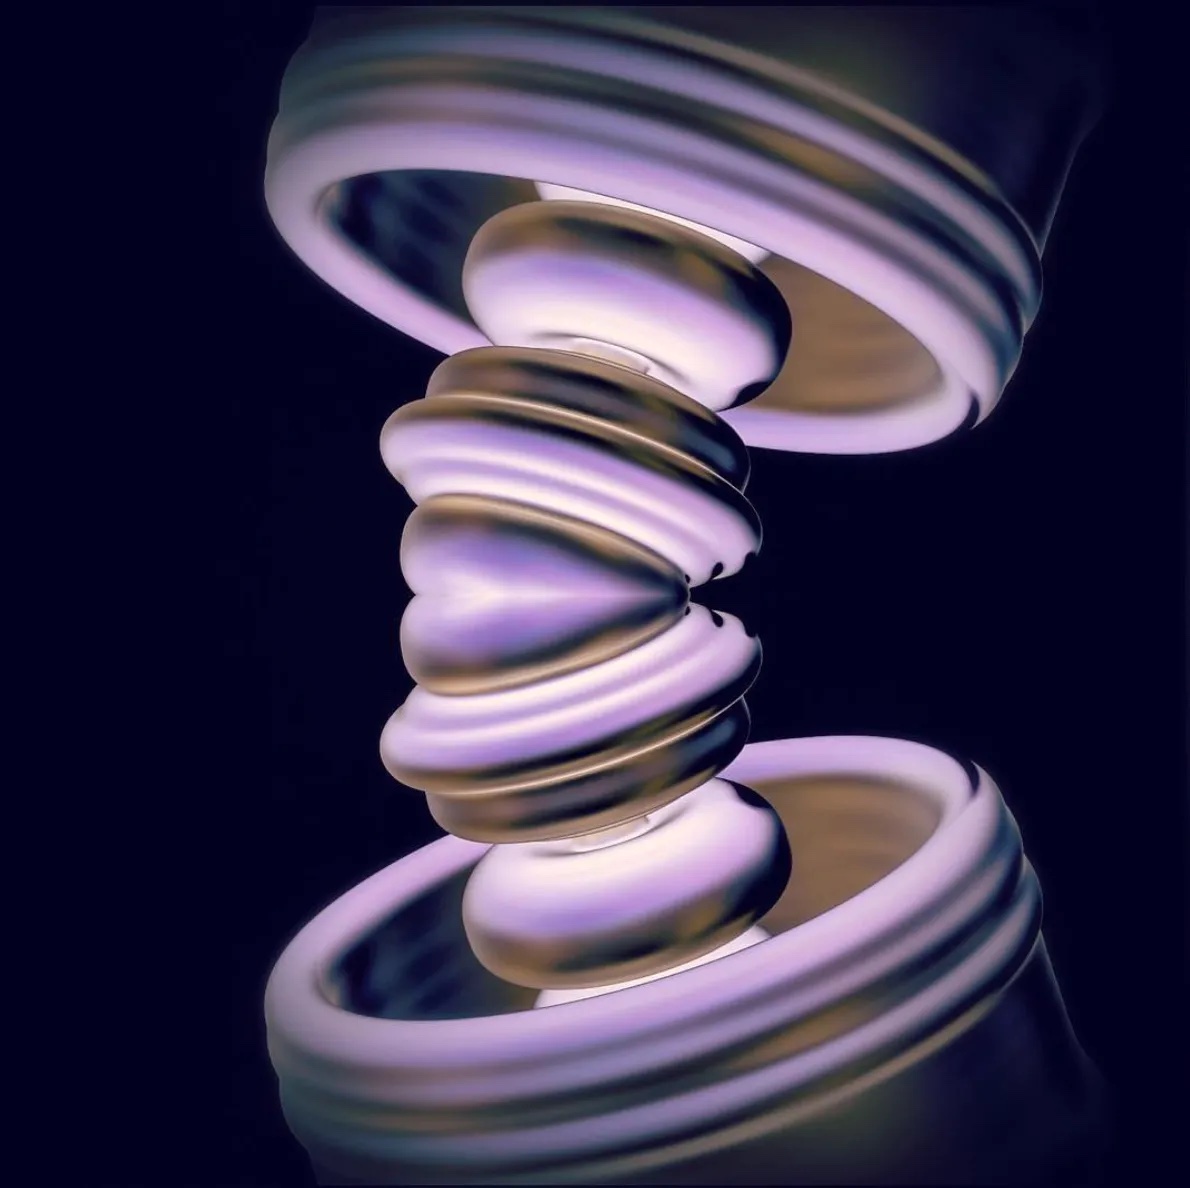 Una imagen de abalorios de la Confederación Haudenosaunee realizada en software 3D utilizando imágenes de colecciones de abalorios de museos. Los colores incluyen plata, oro, rosa, azul y morado. Su aspecto es similar al de una concha o almeja de río.